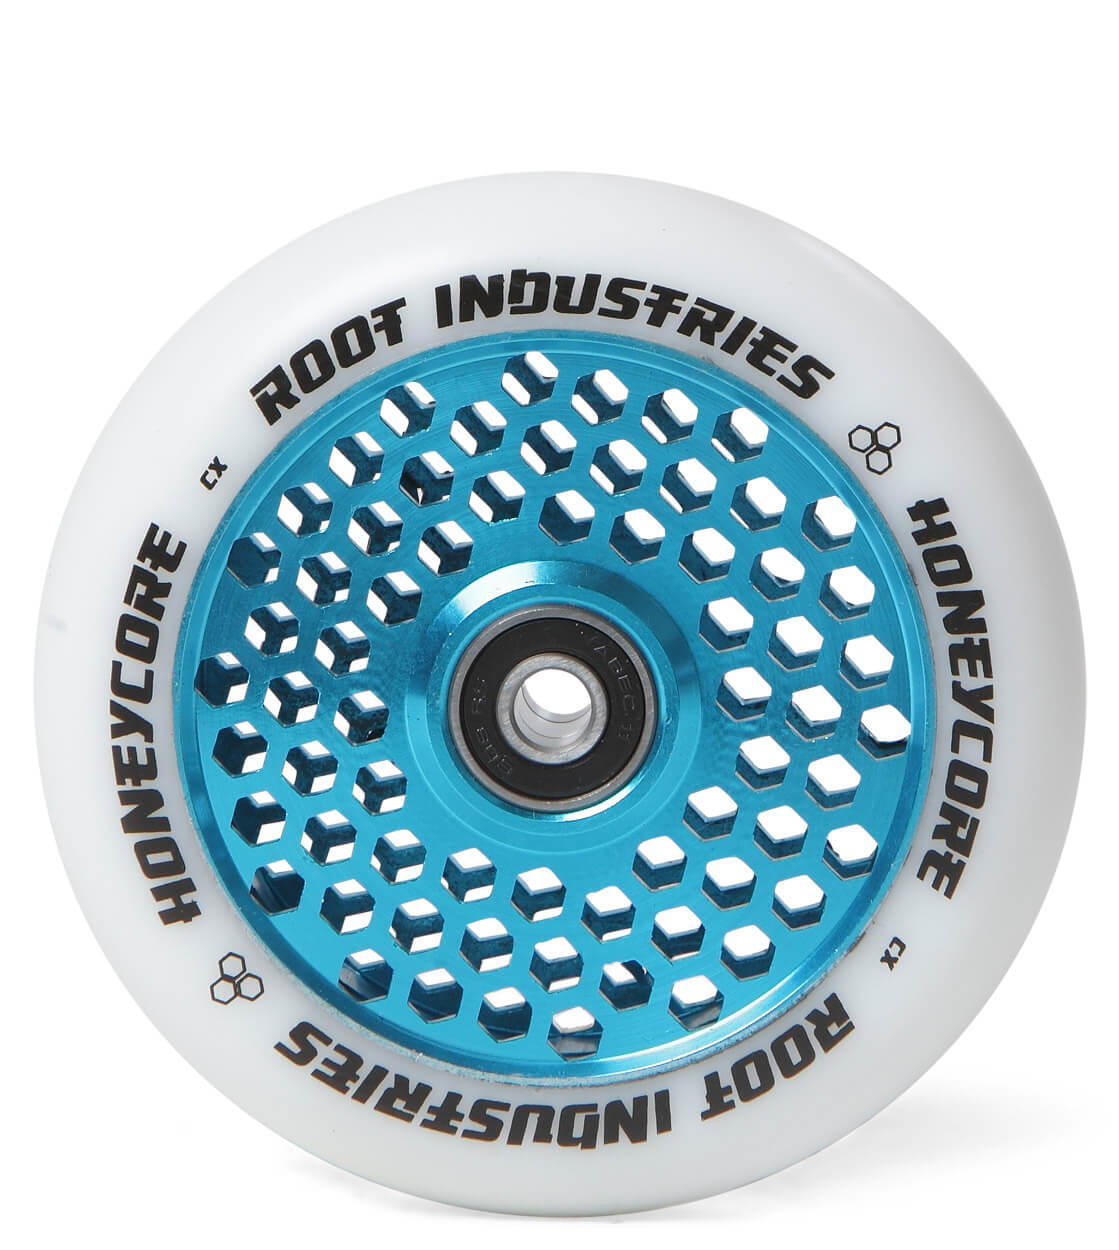 Root Industries Wheel Honeycore 110er